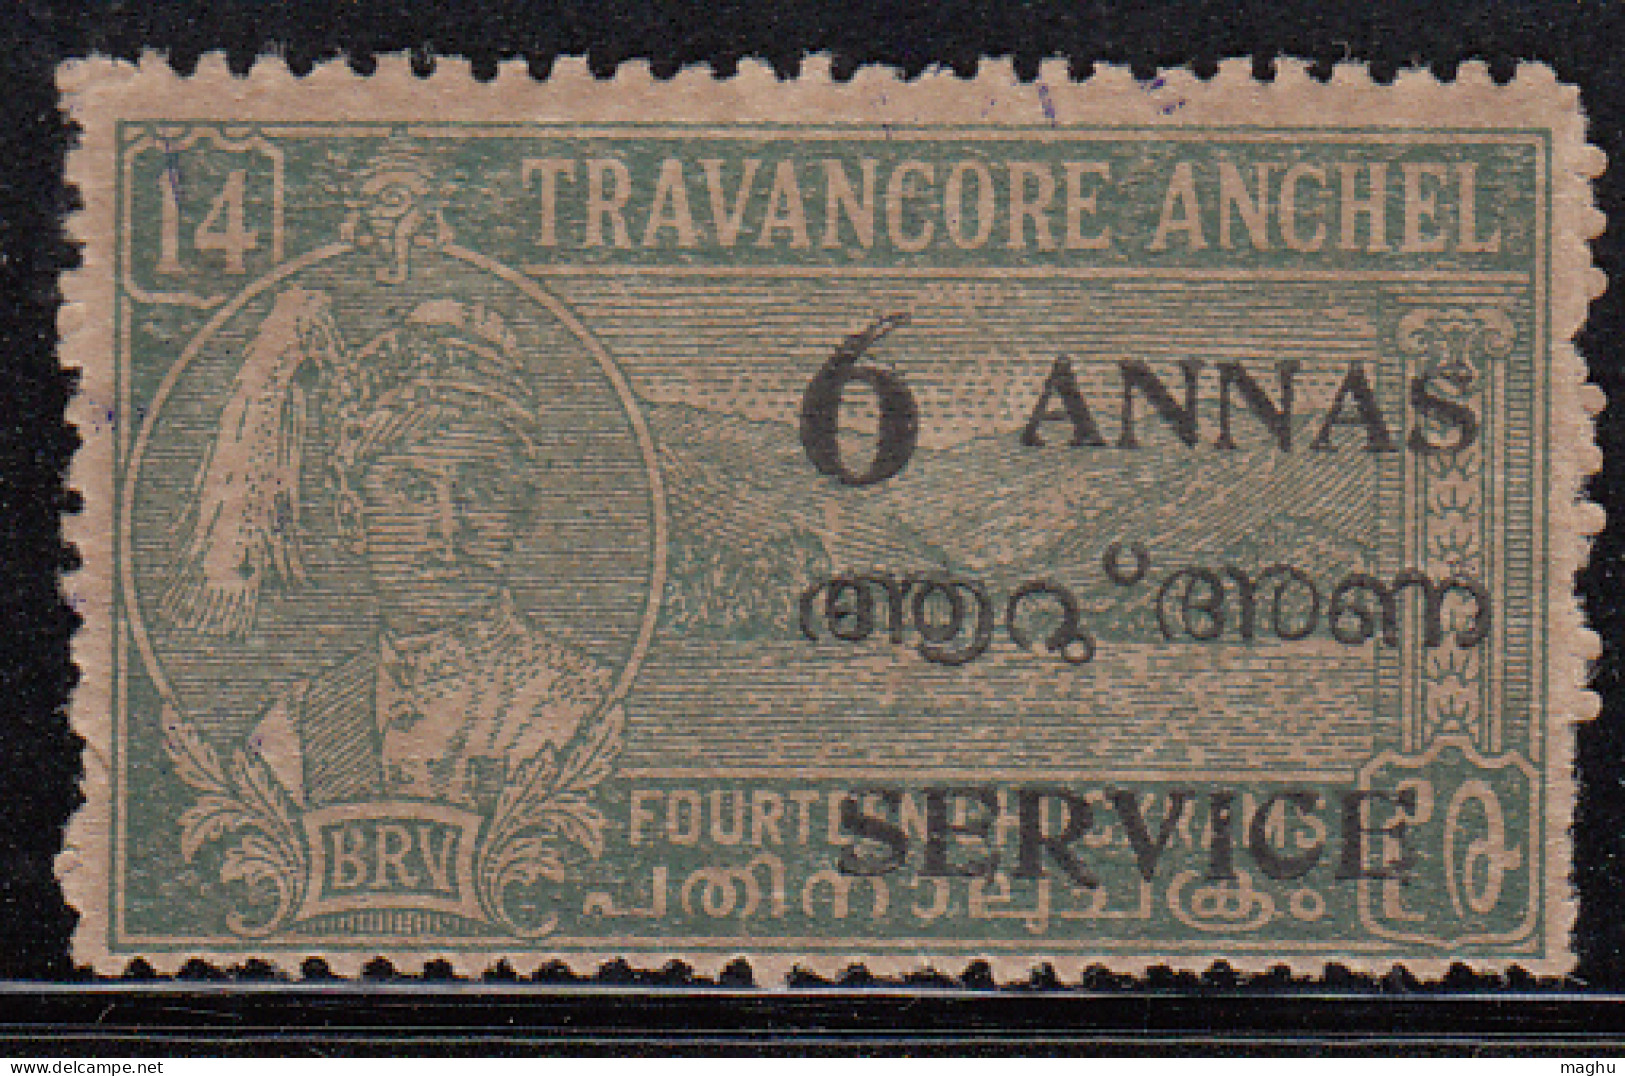 Travancore - Cochin MNH 1949, SERVICE Surcharge 6a On 14ch, Per., 12½, SGO15, British India - Travancore